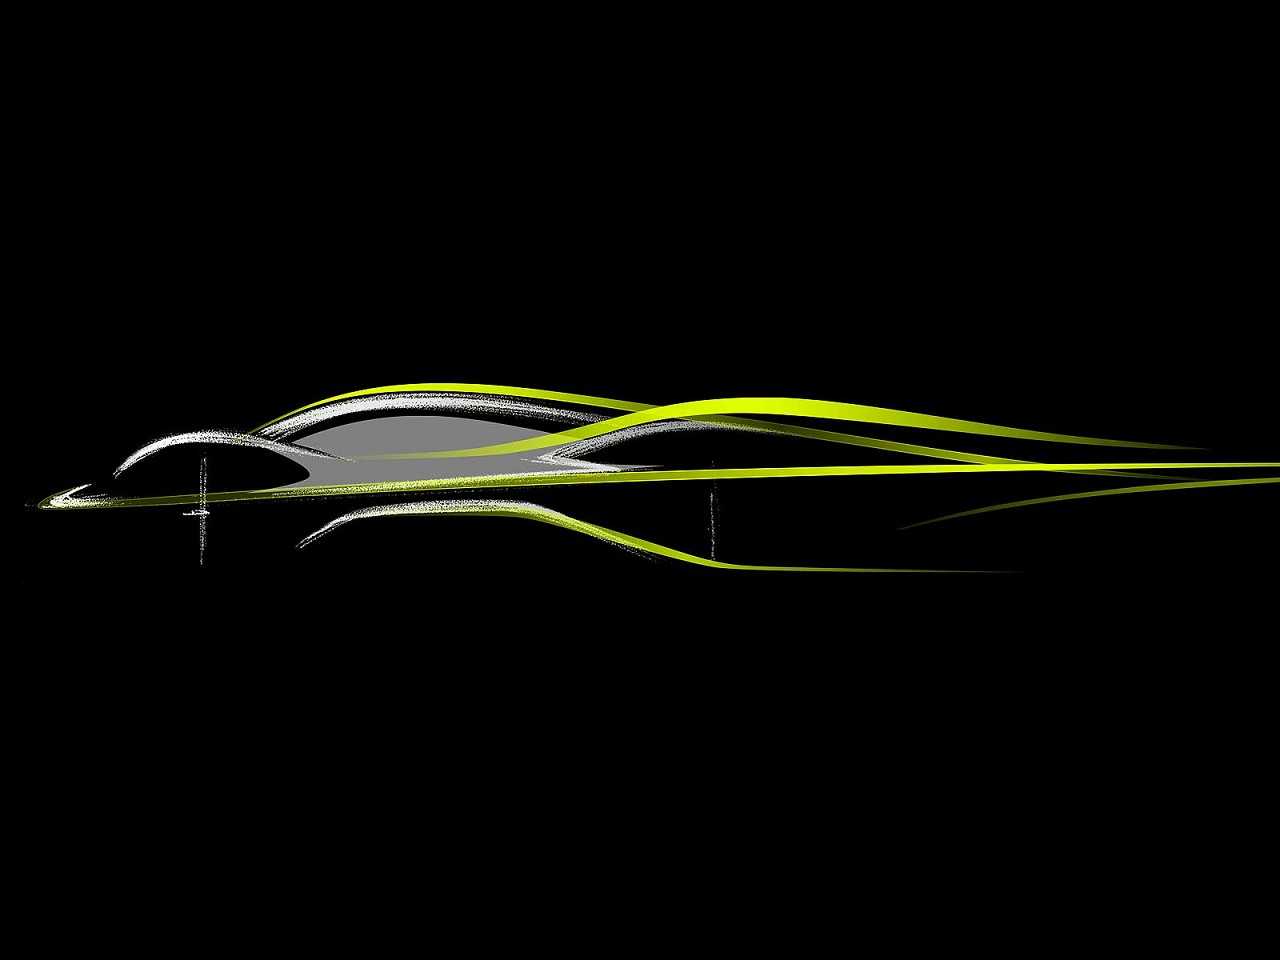 Teaser do projeto AM-RB 001, resultado da parceria entre Aston Martin e Red Bull Racing